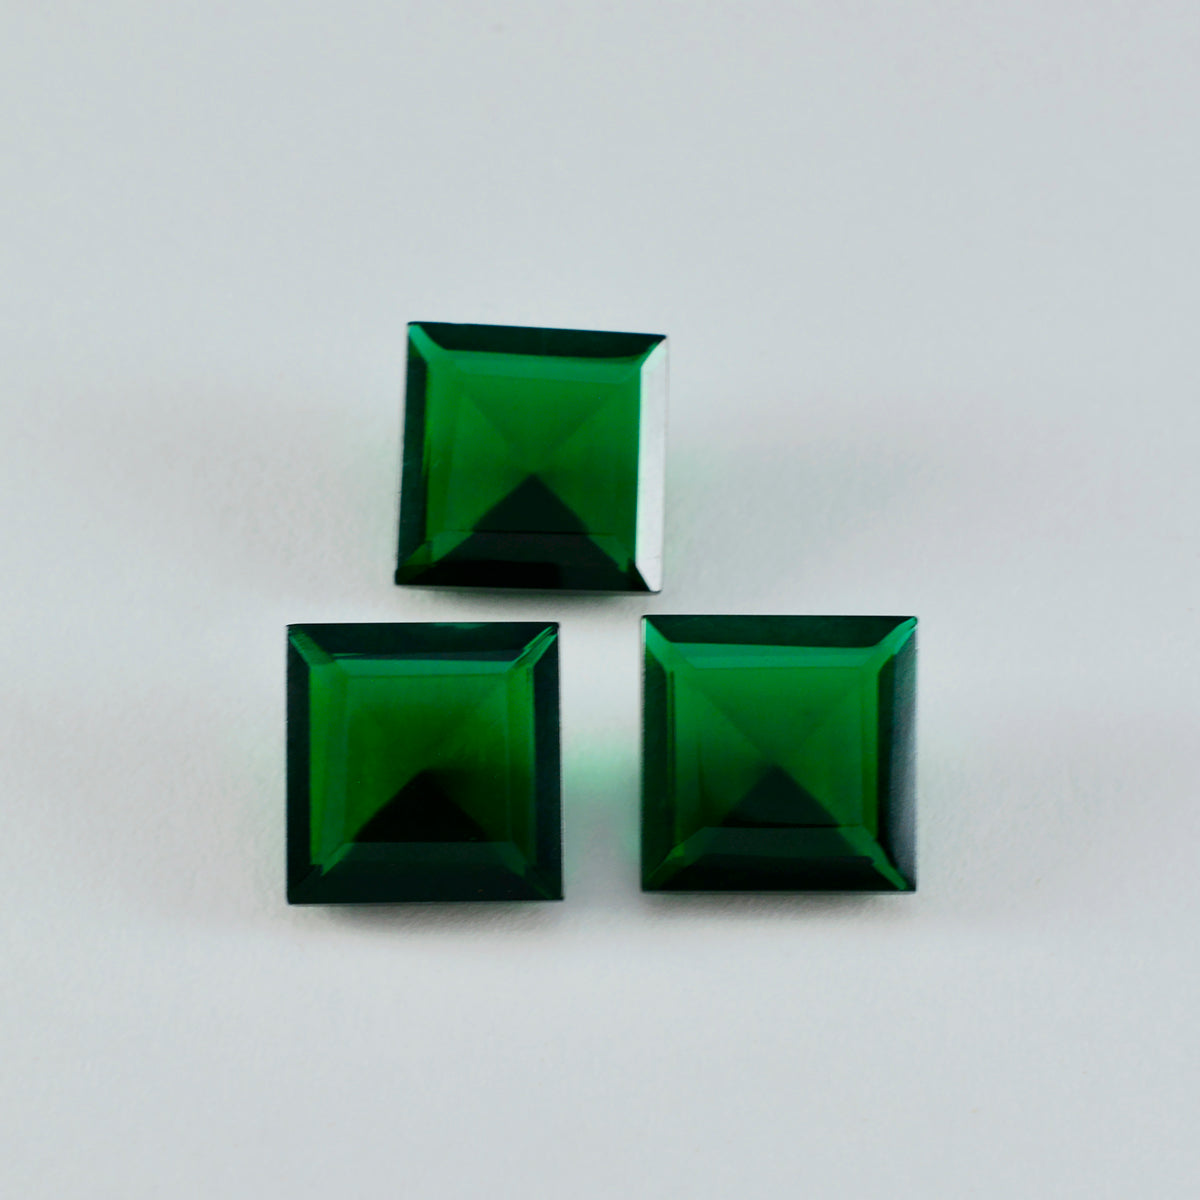 riyogems 1 шт., зеленый изумруд, граненый драгоценный камень 14x14 мм, квадратная форма, потрясающее качество, свободный драгоценный камень